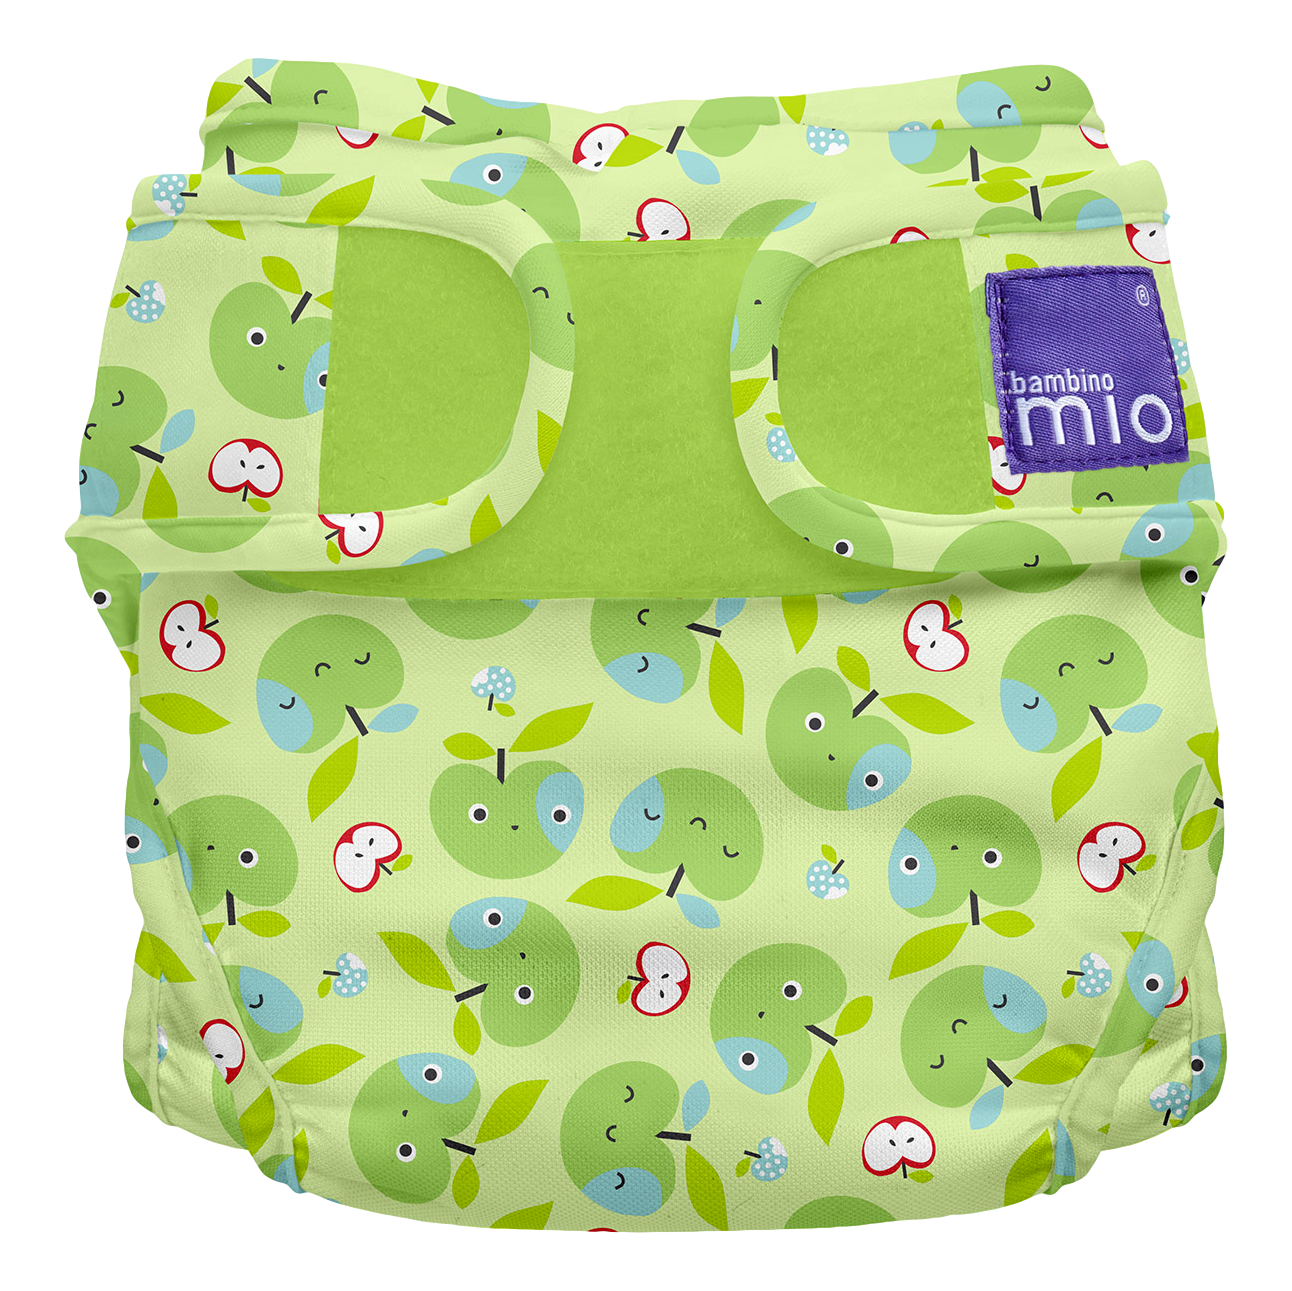 Bambino Mioduo Miosoft – Apple Crunch